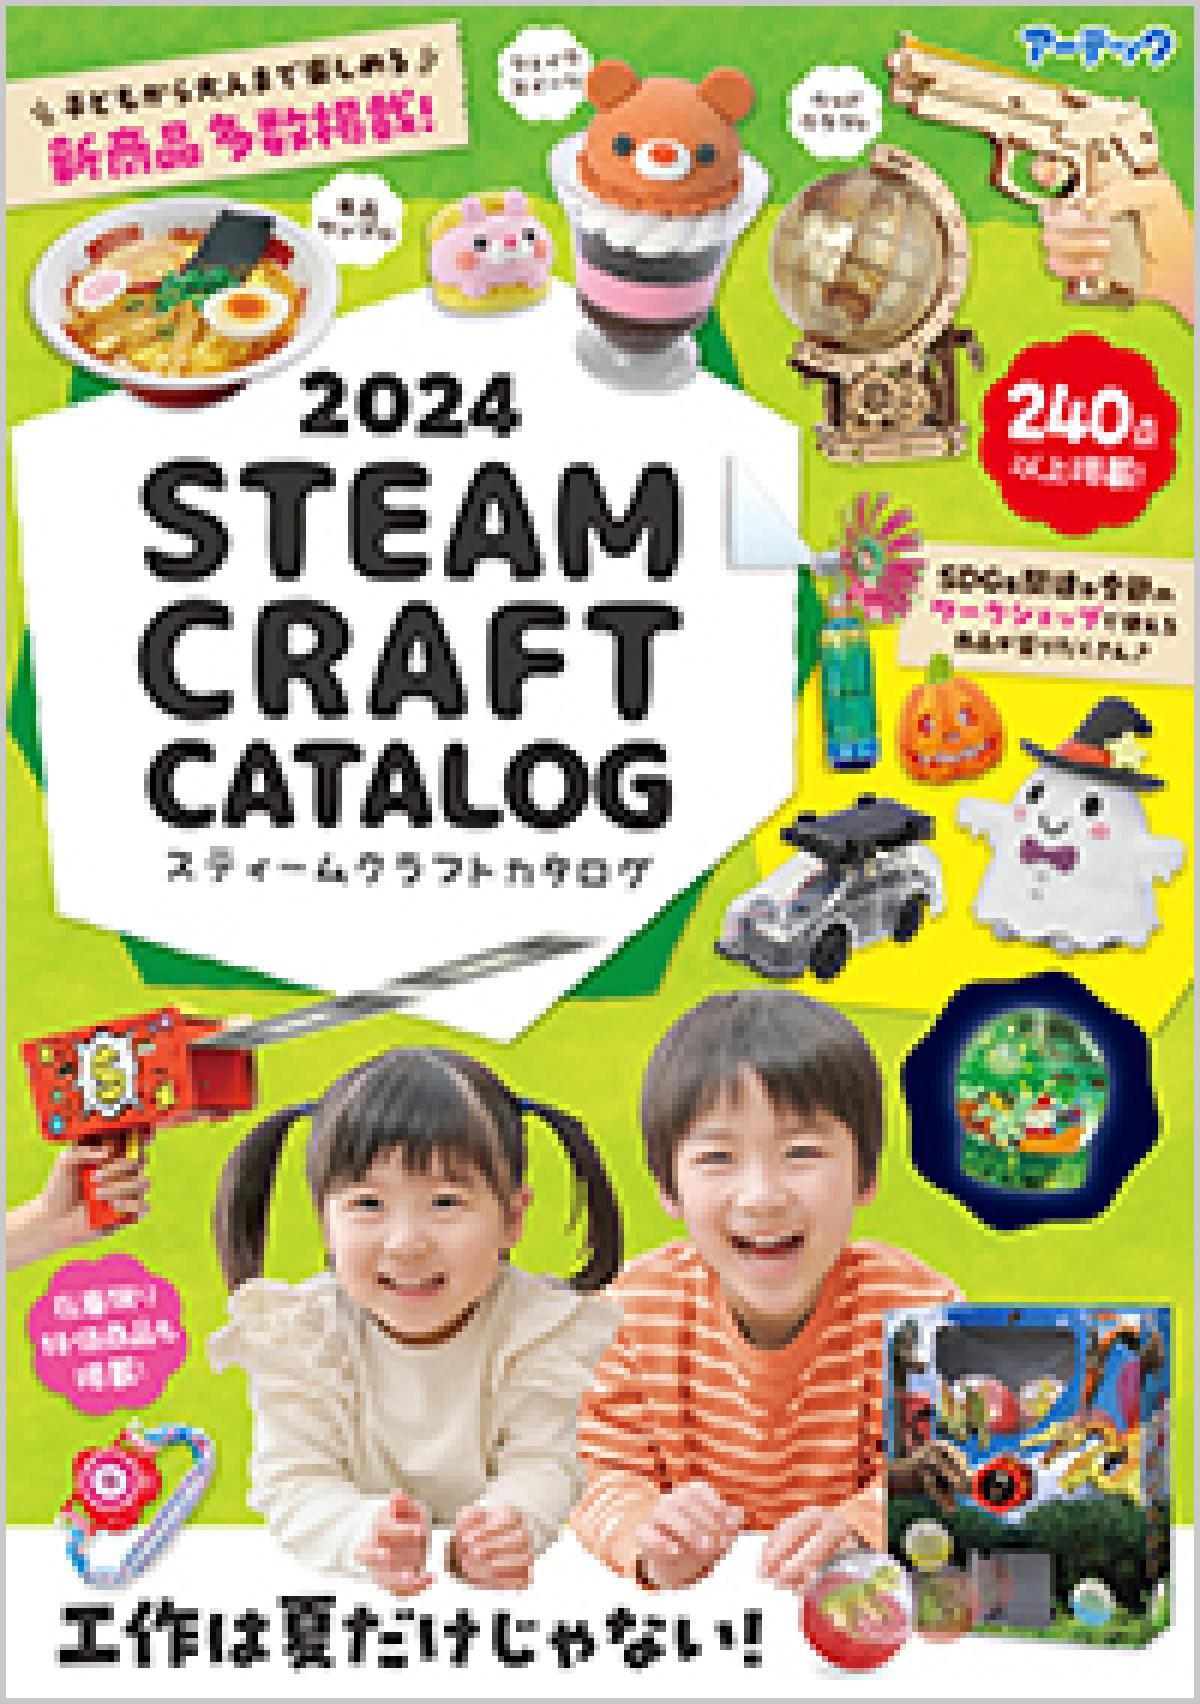 児童館等、子育て支援施設さん向けのイベント用品、ワークショップに使えるグッズのカタログ2024 STEAM CRAFTカタログ発刊されました。